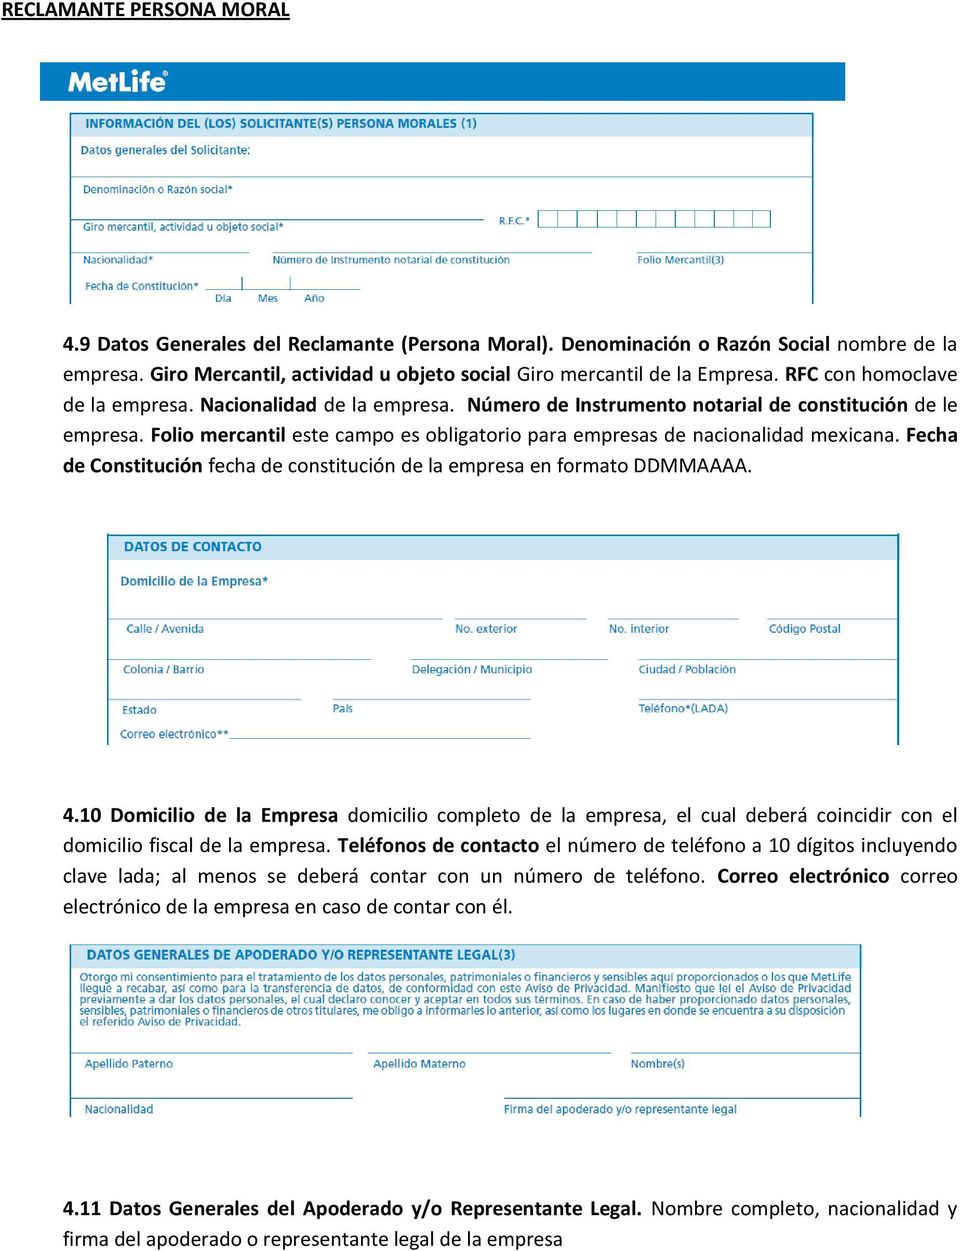 Folio mercantil este campo es obligatorio para empresas de nacionalidad mexicana. Fecha de Constitución fecha de constitución de la empresa en formato DDMMAAAA. 4.